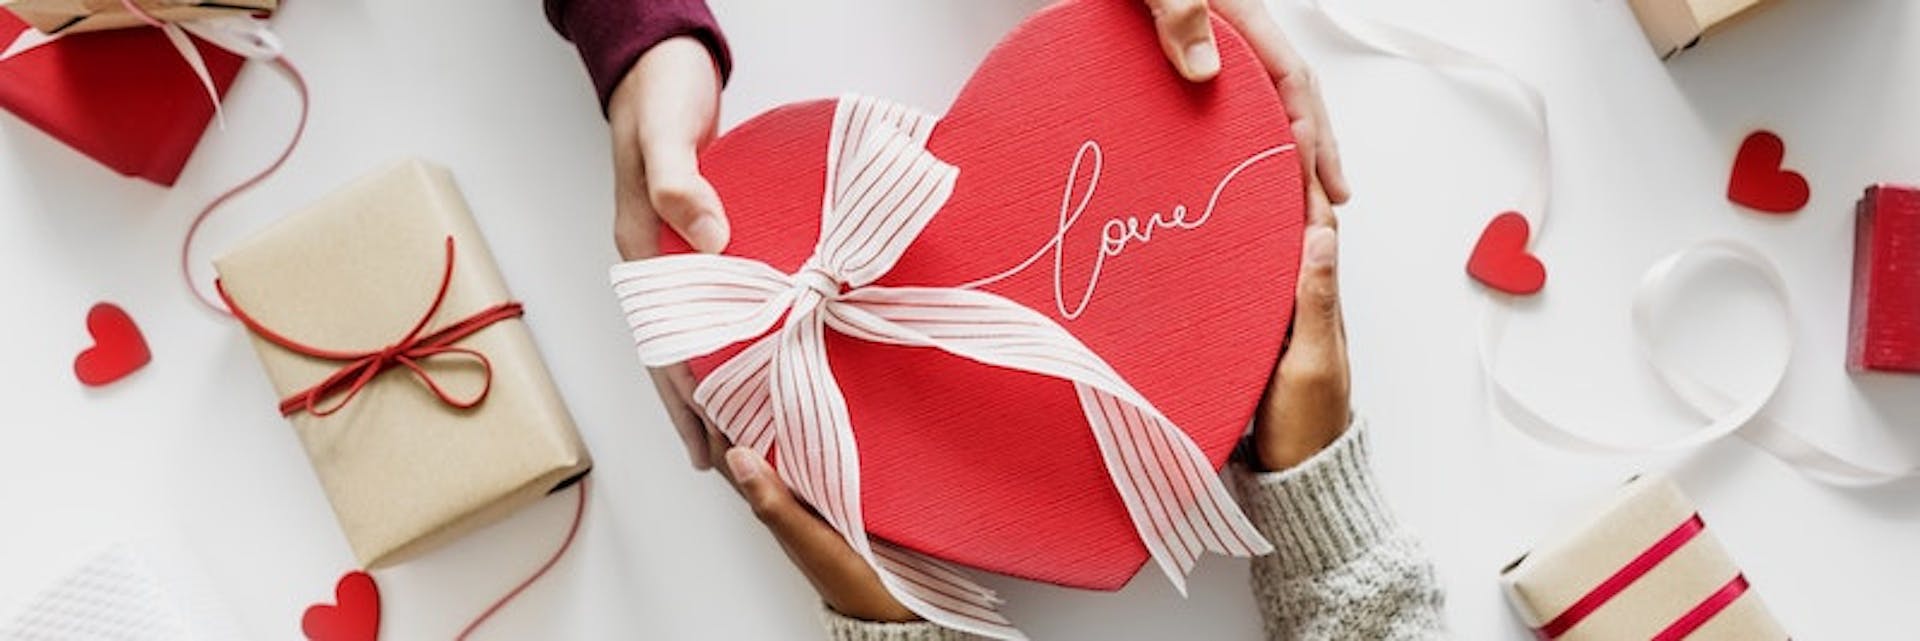 Una caja de carton roja en forma de corazon con la palabra "love" escritta en ella